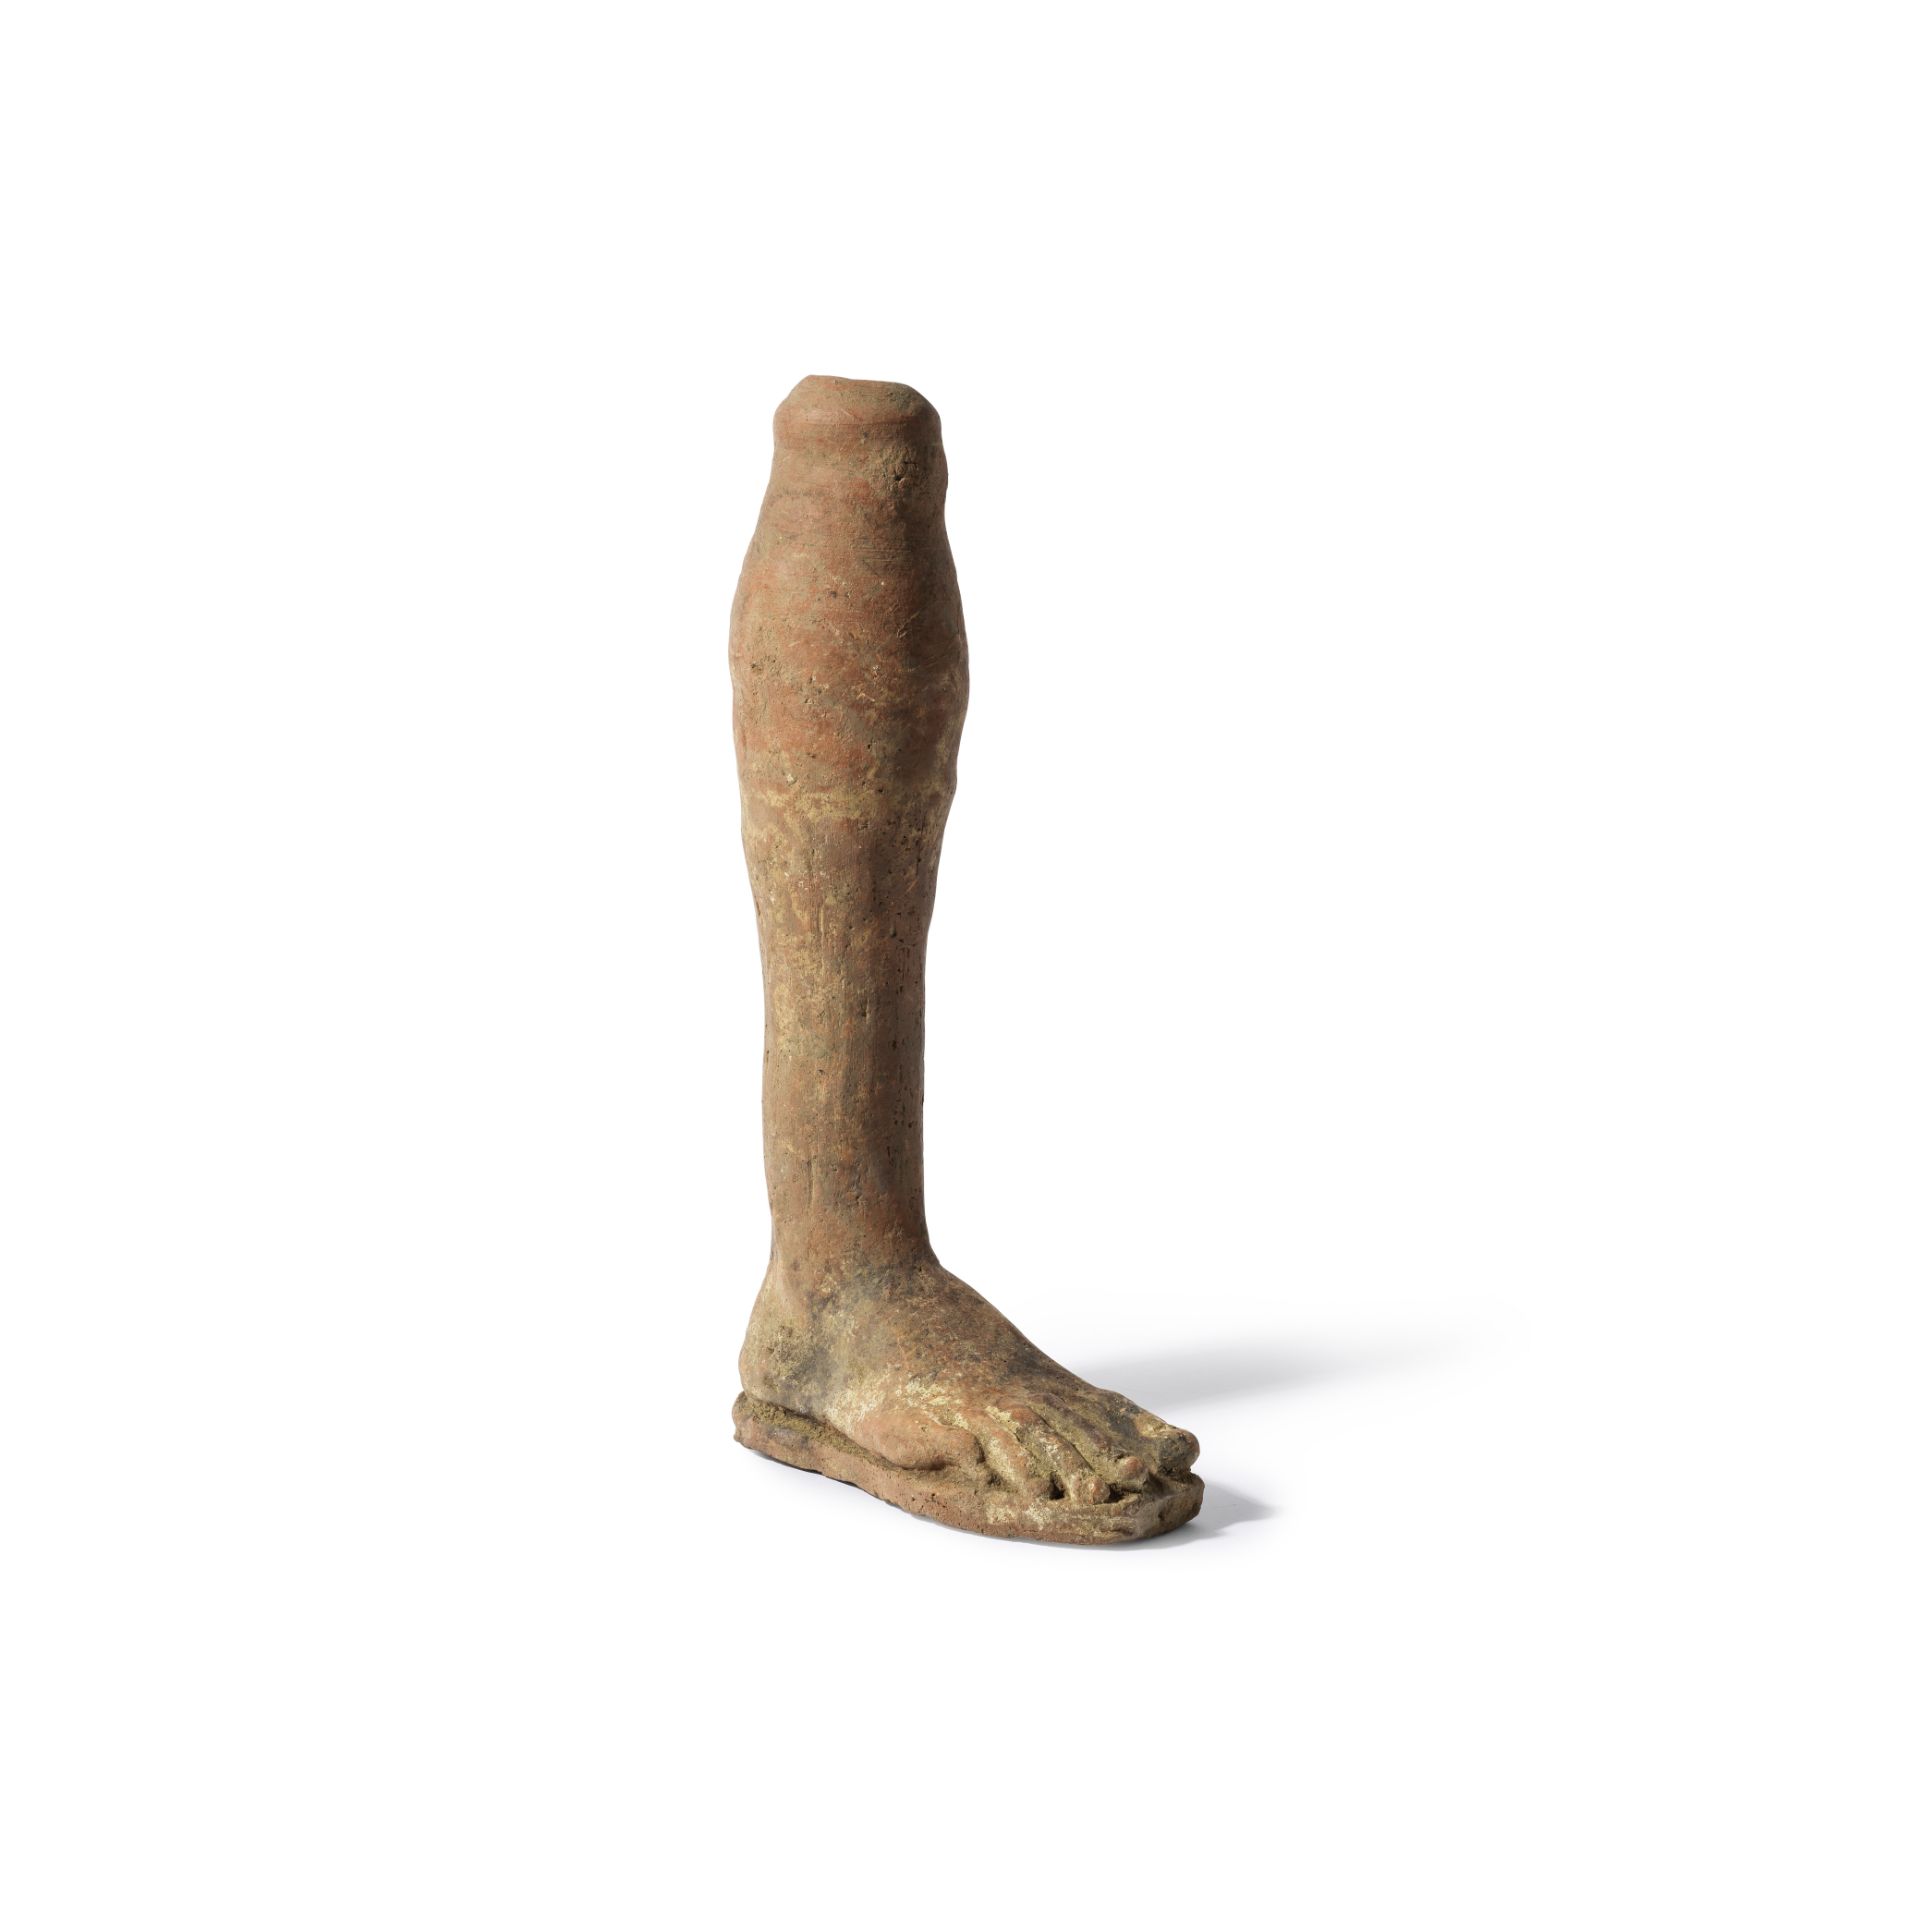 Pied droit votif &#233;trusque en terre cuiteAn Etruscan terracotta votive right leg